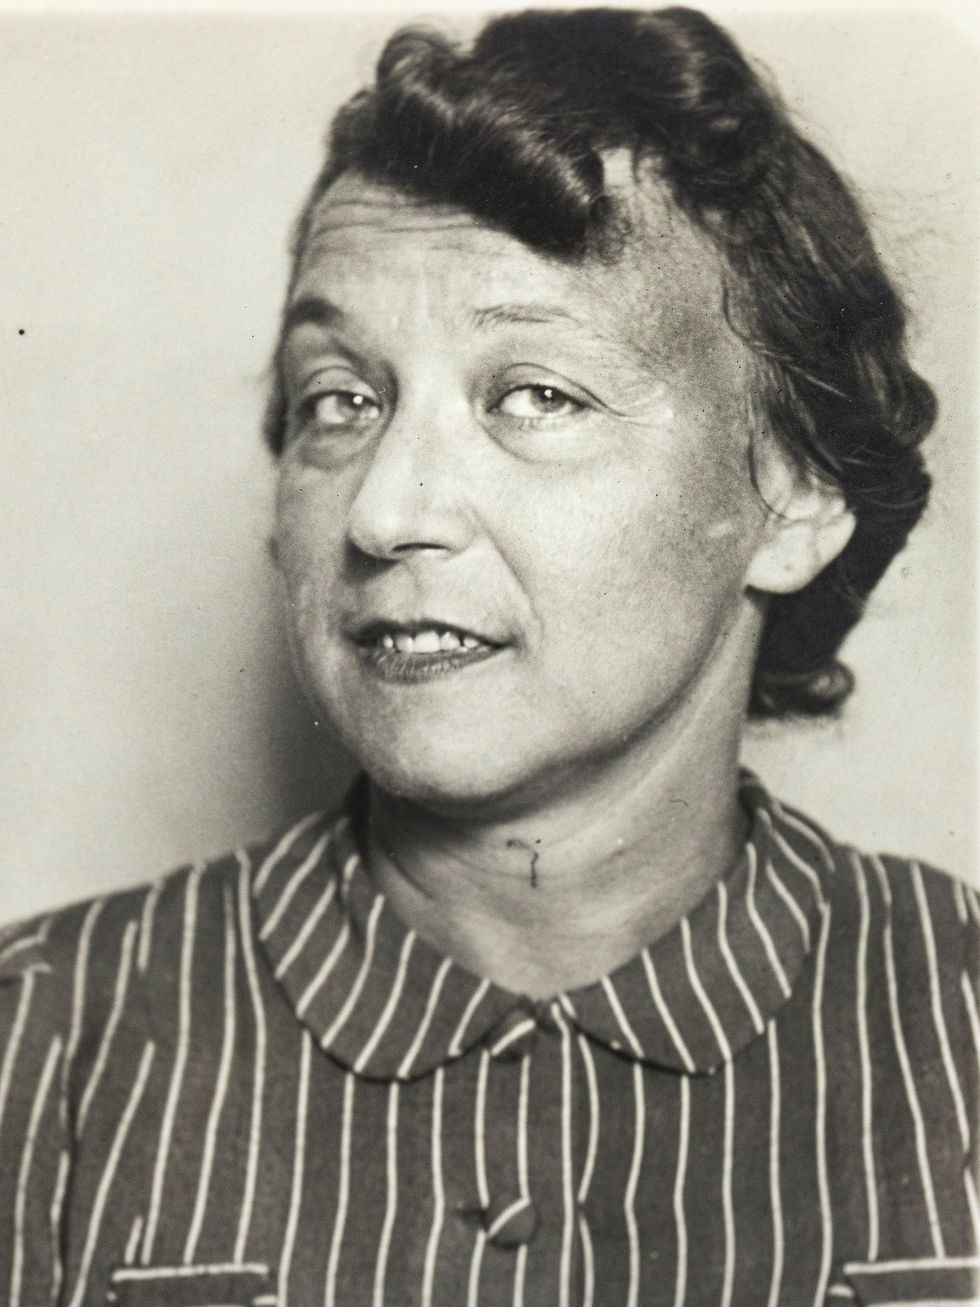 De in 1900 in Wenen geboren Luisa Mahler werd in 1940 genterneerd in het concentratiekamp in Vinchiaturo een gemeente in de buurt van Campobasso